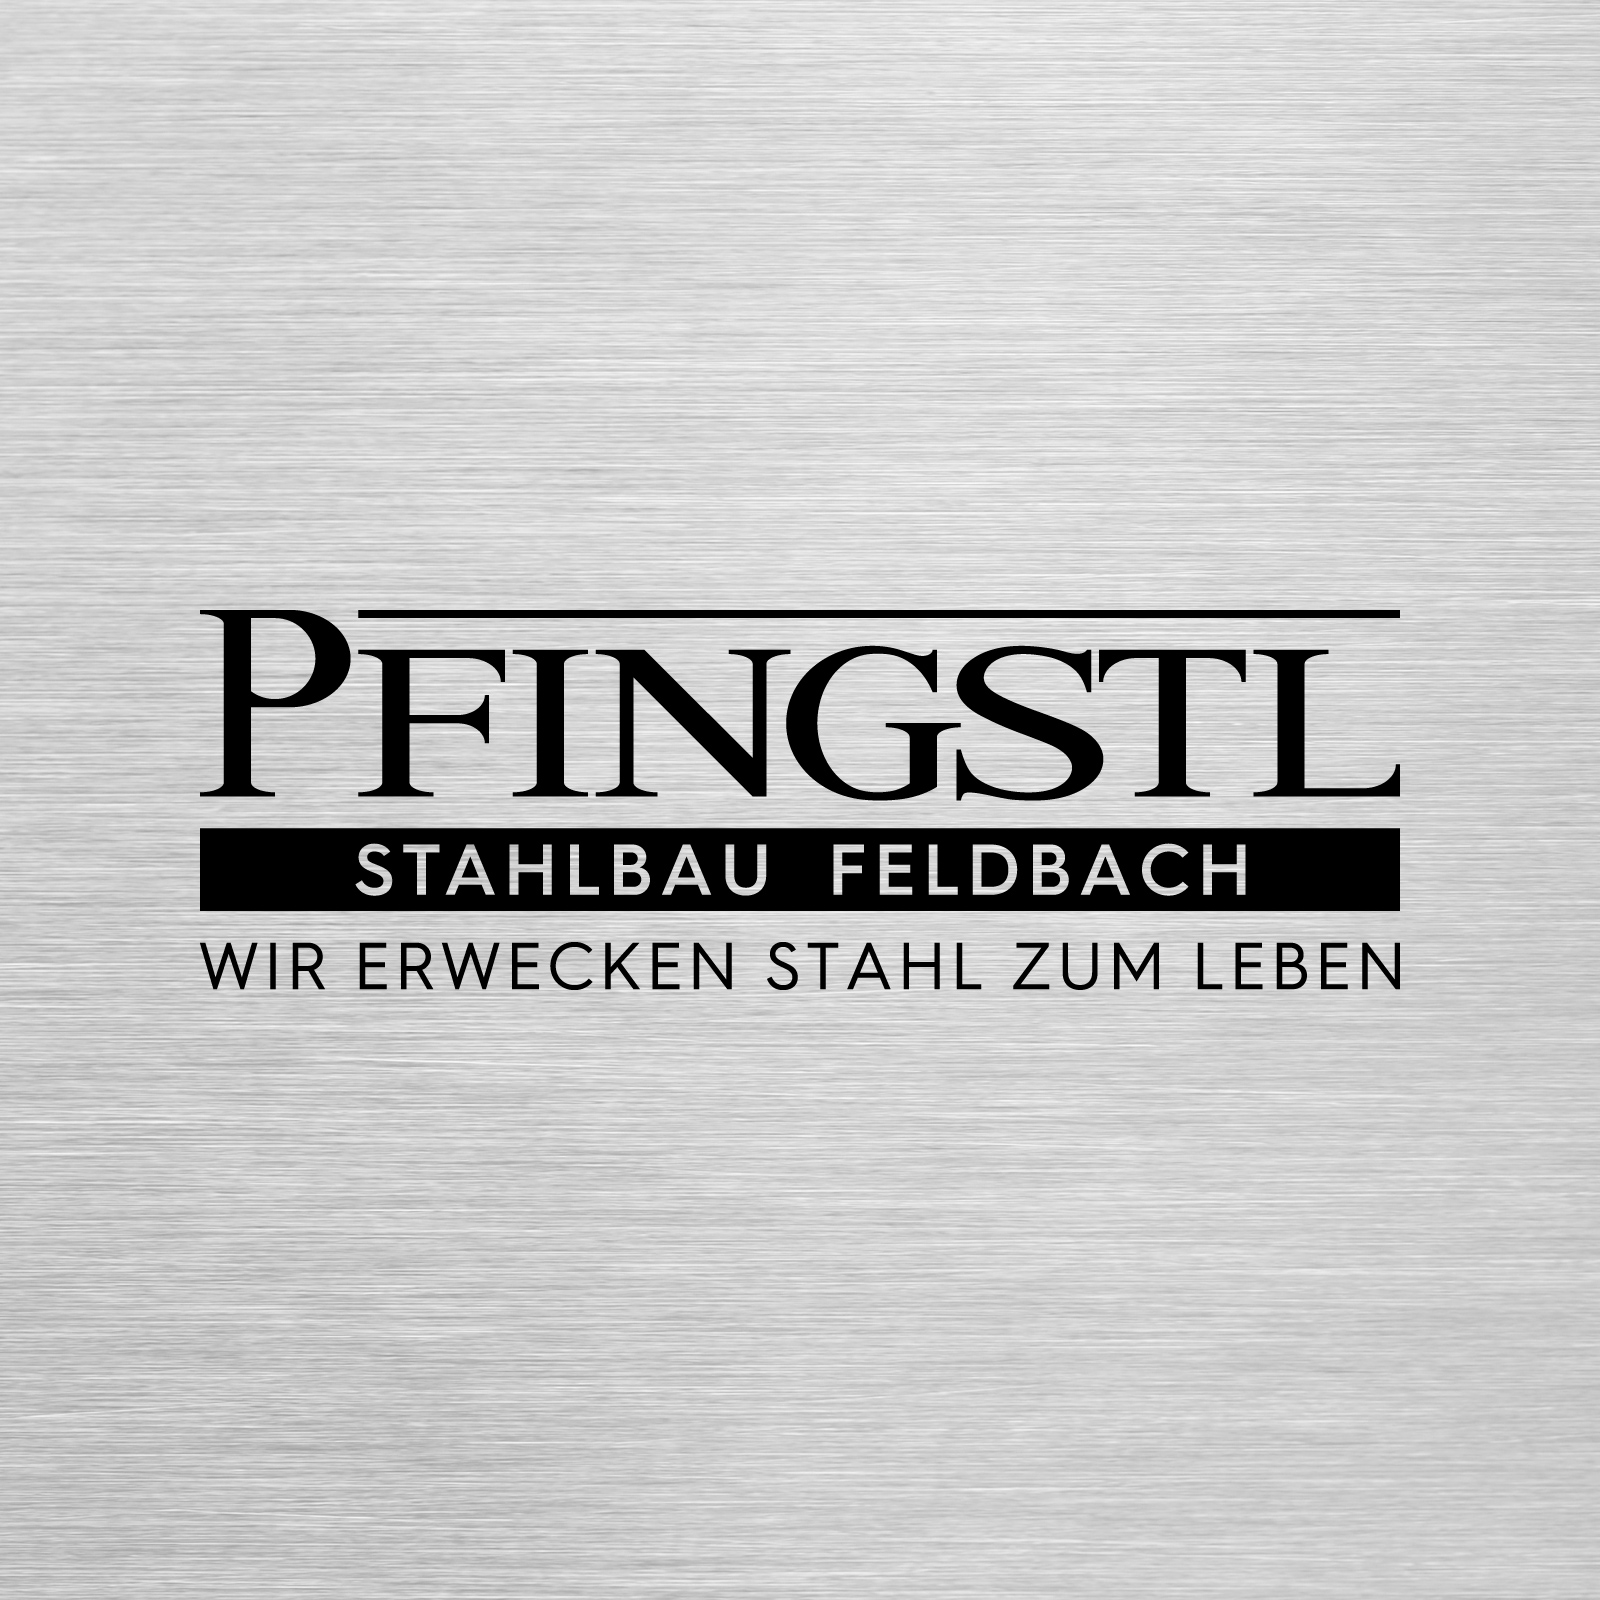 Pfingstl Stahlbau Feldbach